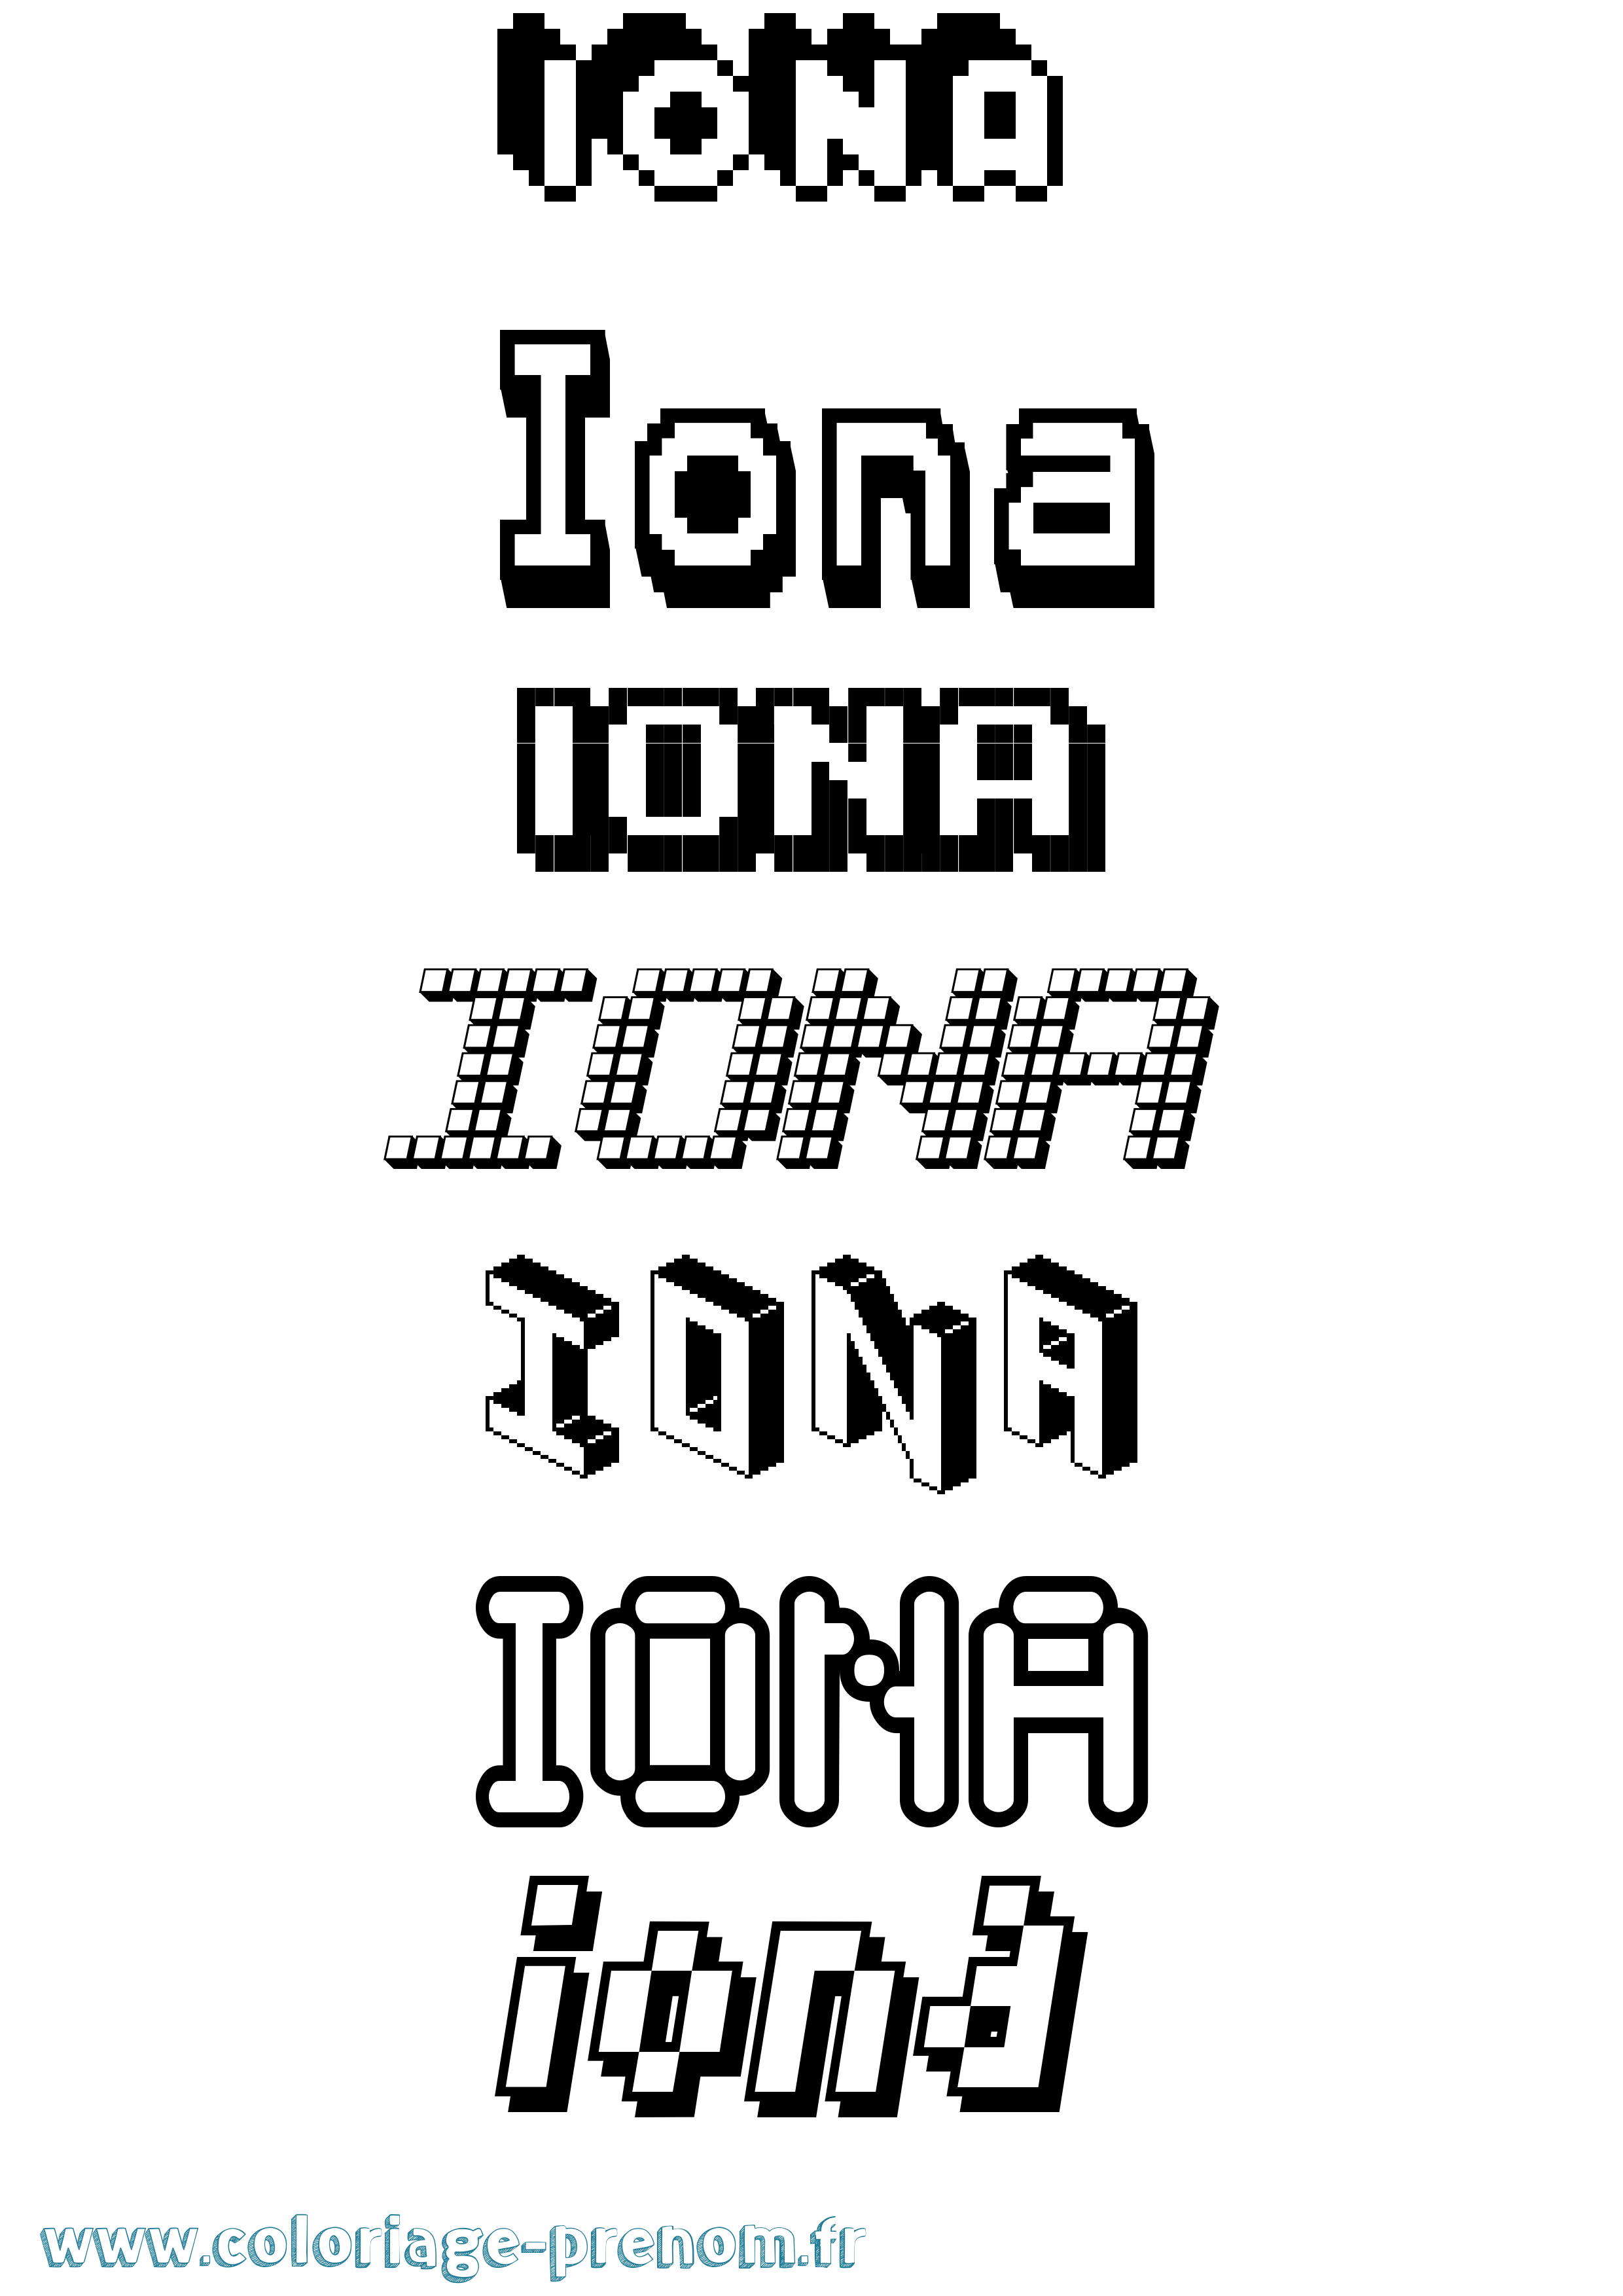 Coloriage prénom Iona Pixel